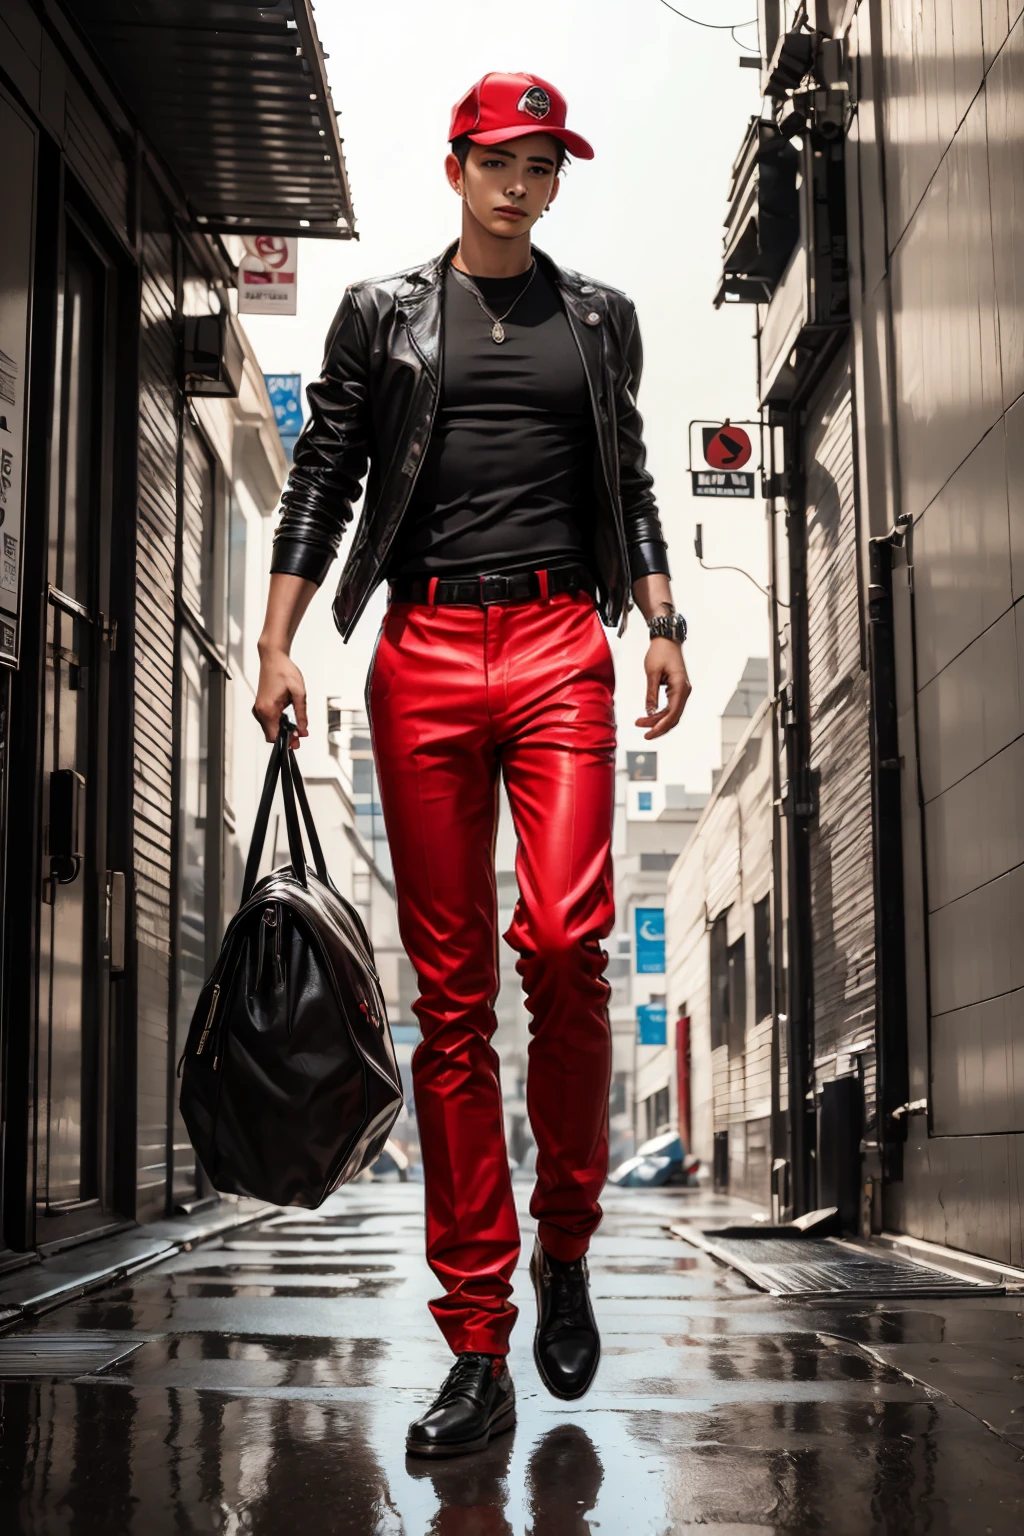 普莱诺将军, 全身, ((1名英俊的年轻人, 优雅的, 感性的:1.6)), (高分辨率:1.2),极其详细, 现实主义者, 清晰聚焦,炫耀,4K,8千, 高清. 杰作, hiper 现实主义者, 超详细,戴着红帽子, 红色迷彩, 红色运动衫, 蓝色紧身裤, 广阔, 通过卢比奥, 现代发型:1.4, 鼻唇沟 , 常设, 一半, (现实: 1.5), 赛博朋克, 氖 city, 氖, 3d, 程序网关, 体积射线, 白色巩膜, 蓝眼睛,